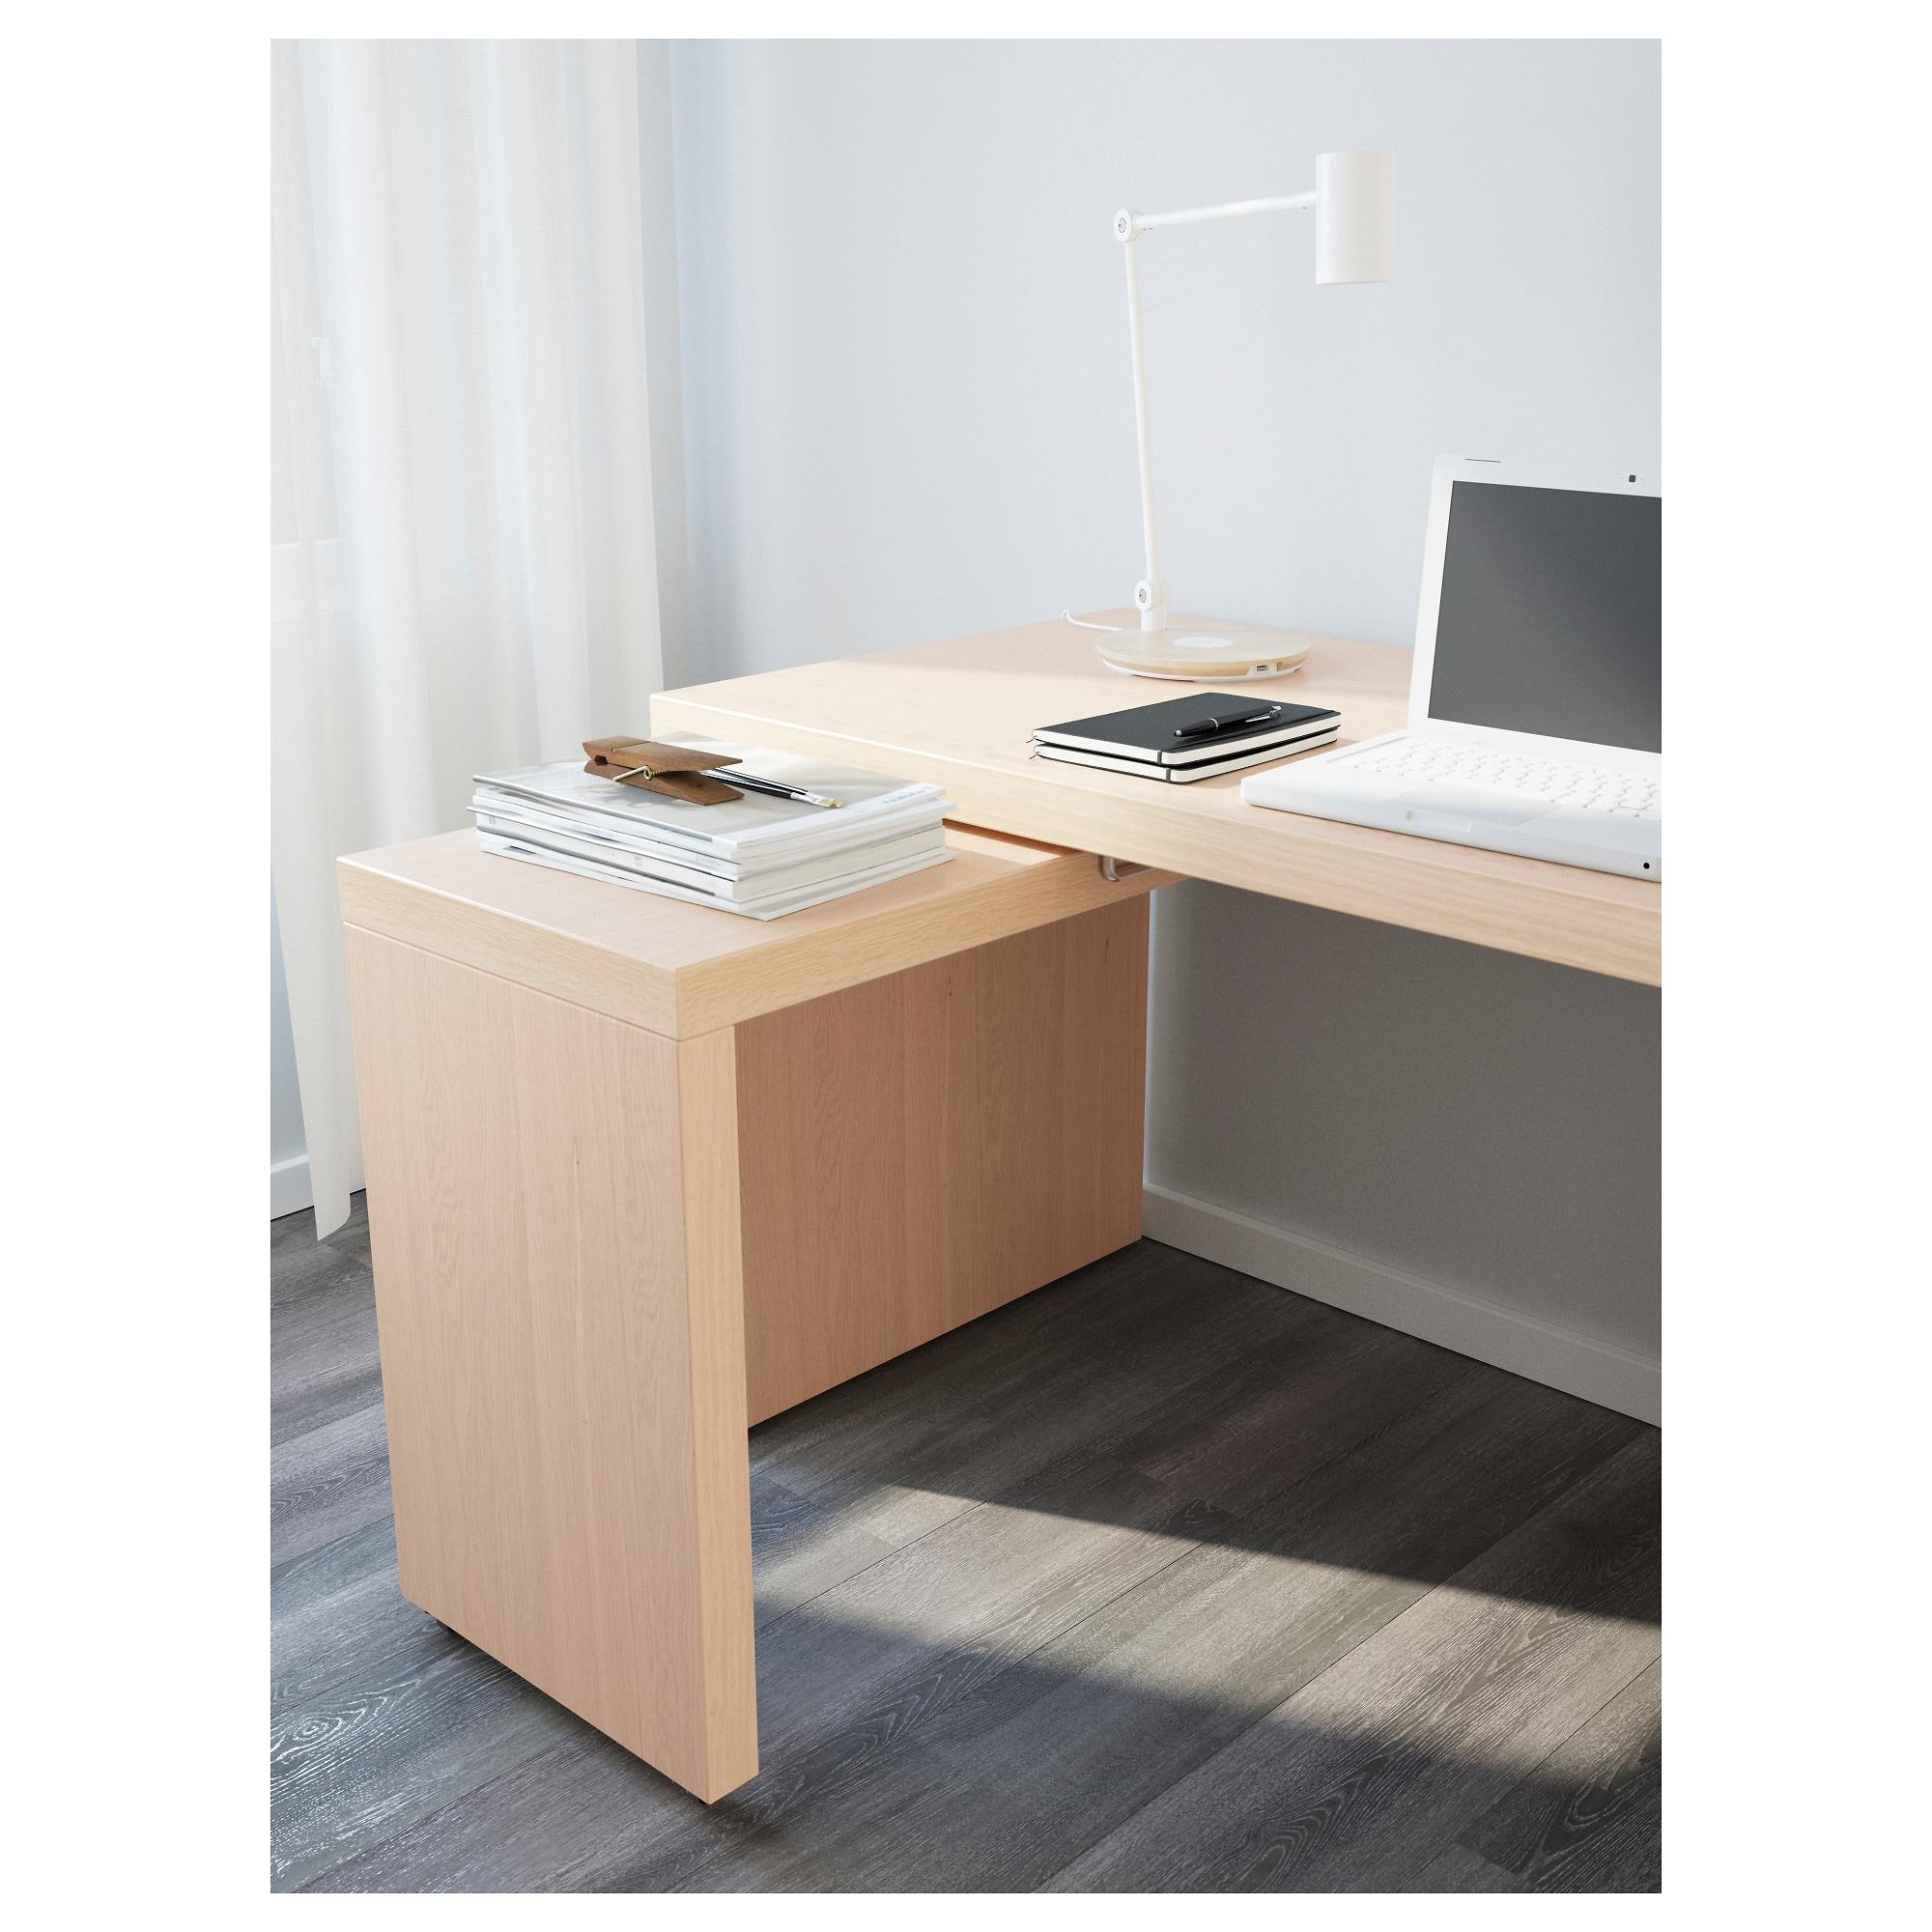 Malm МАЛЬМ письменный стол с выдвижной панелью, белый151x65 см